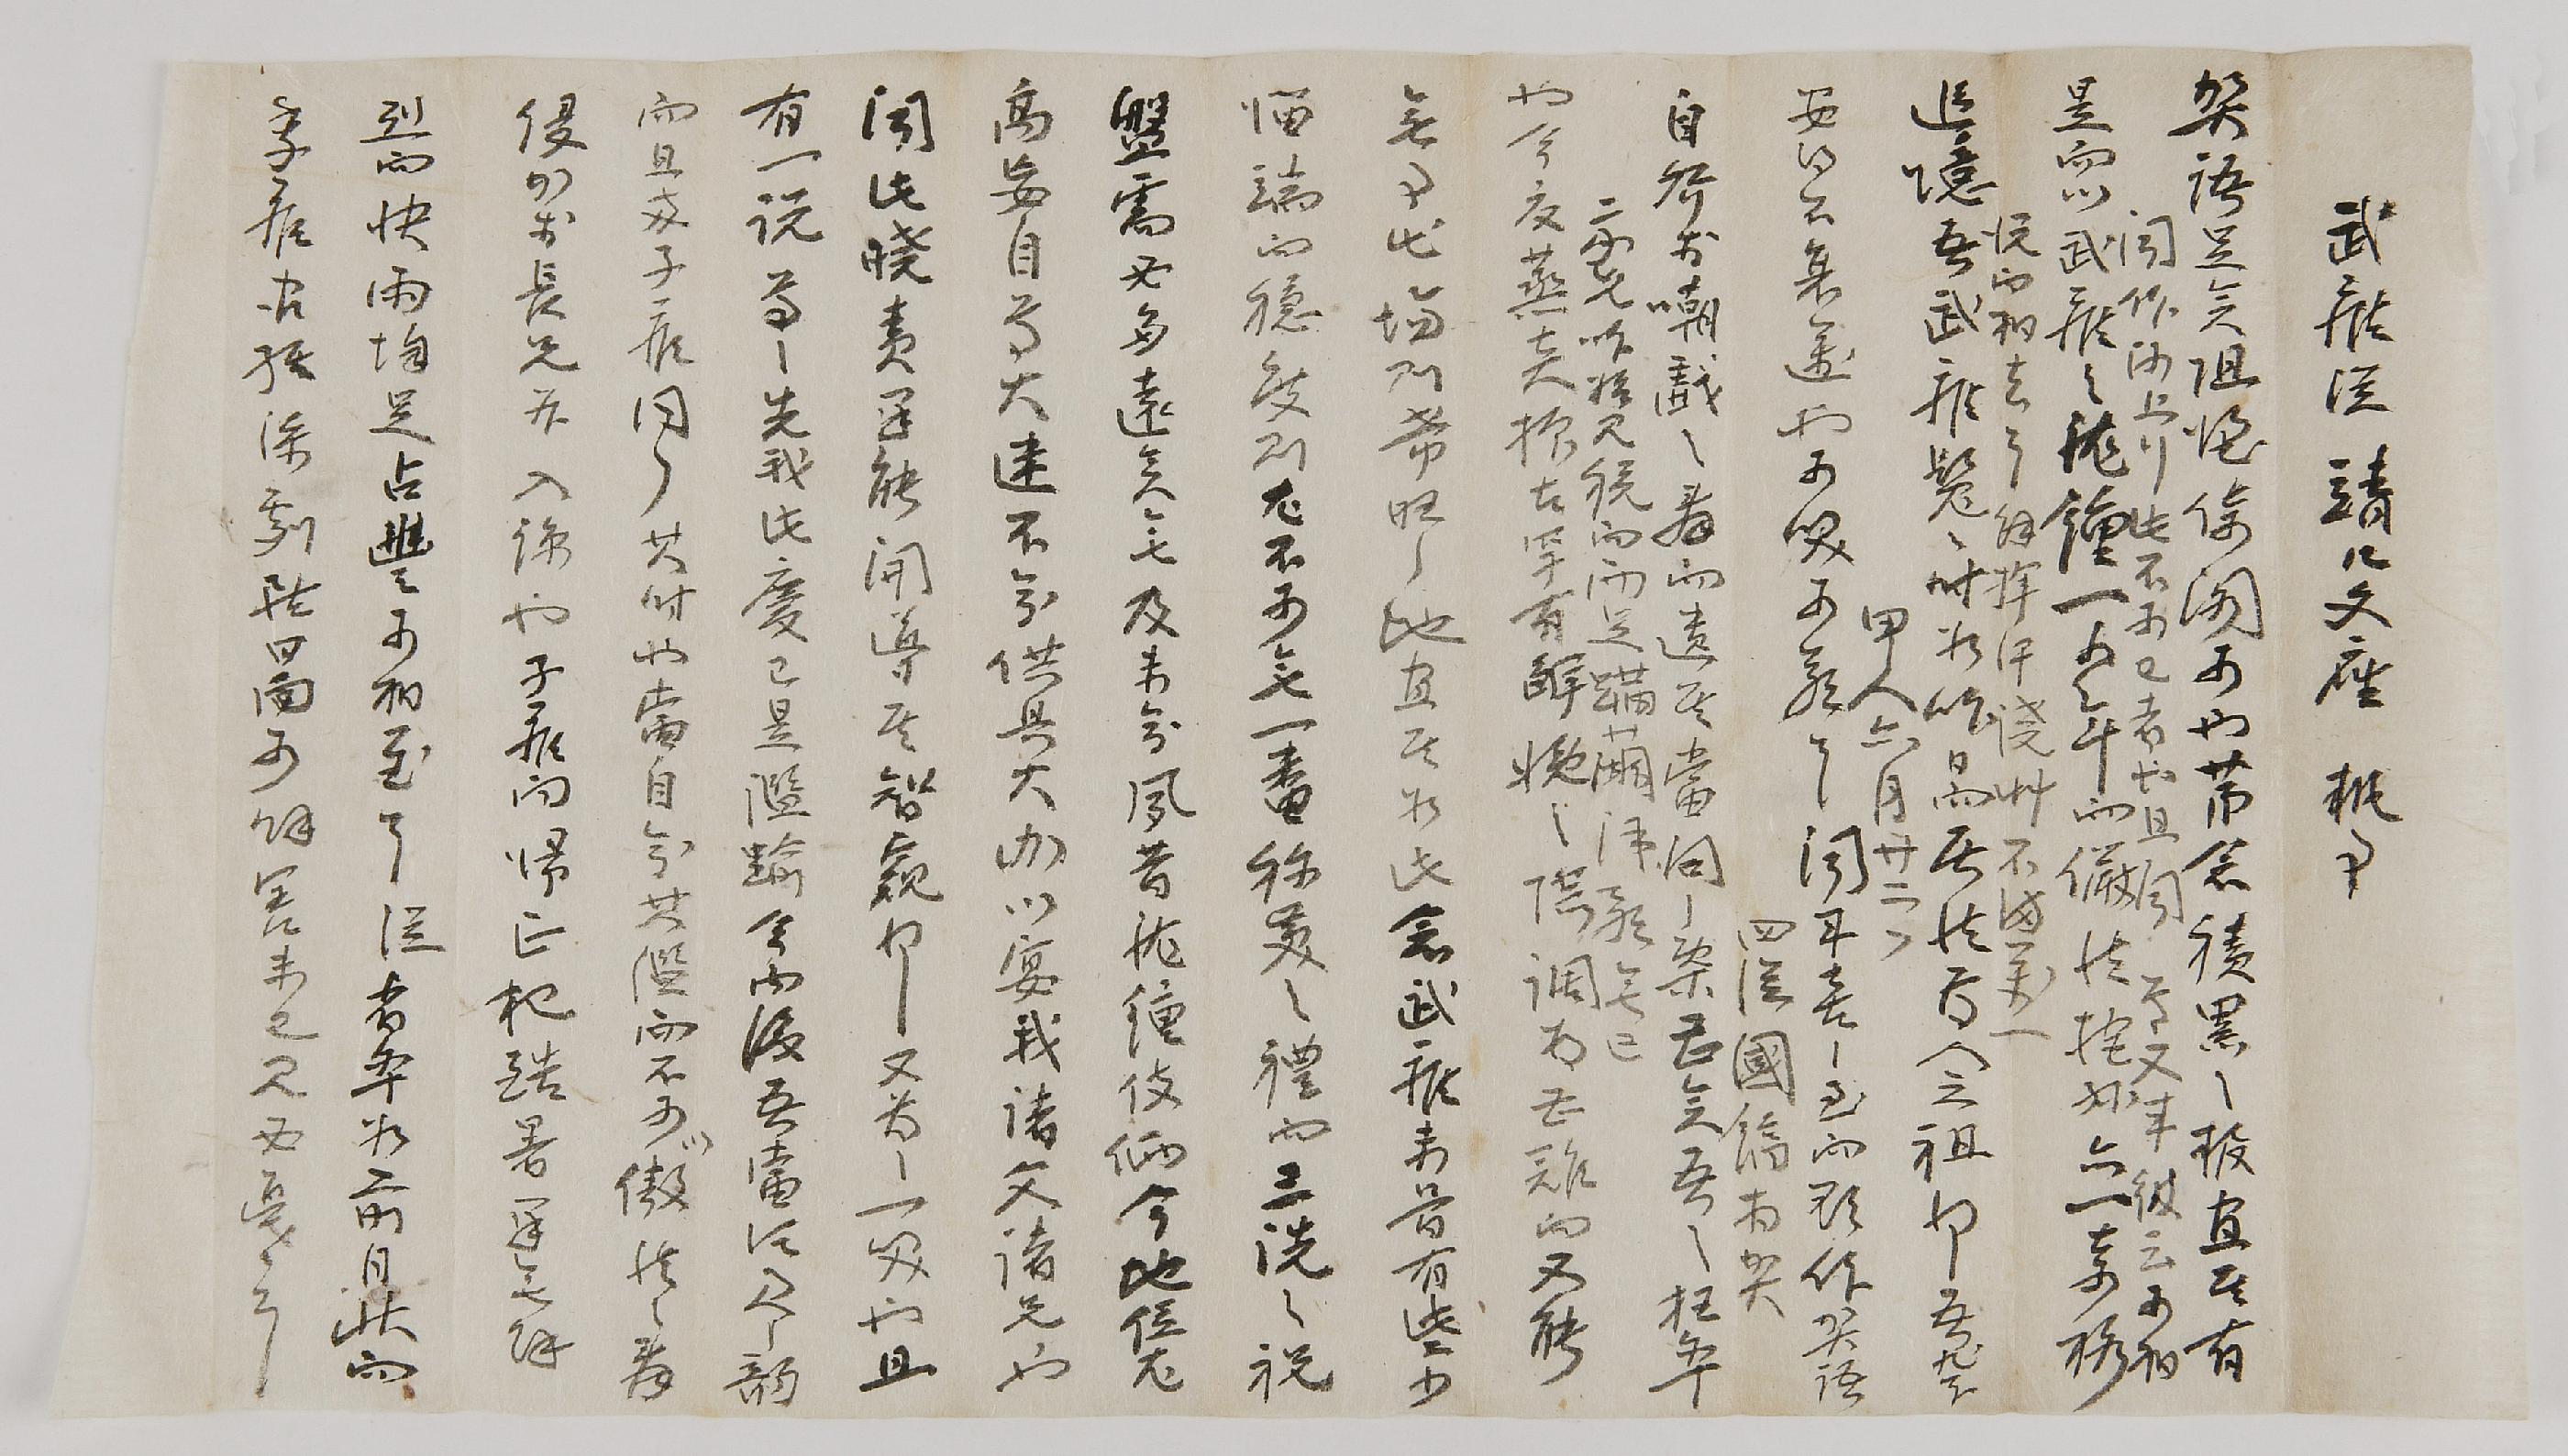 이국호(李國鎬)가 1914년에 이벽호(李璧鎬)에게 전하는 편지